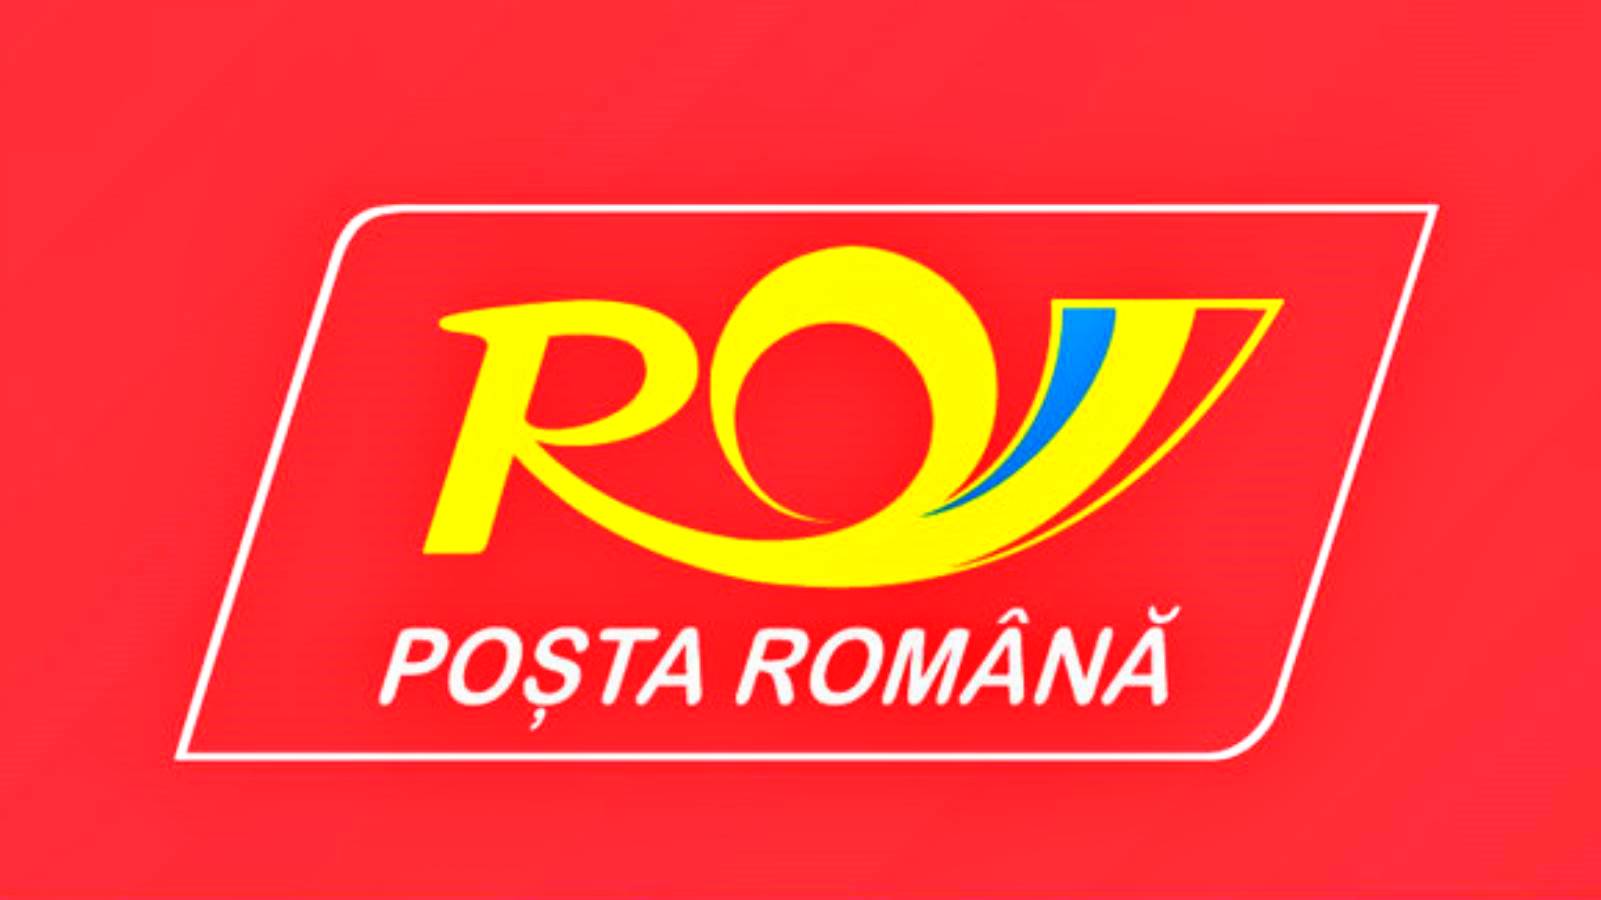 Ogłoszenie Poczty Rumuńskiej przekazuje Rumunom cały kraj